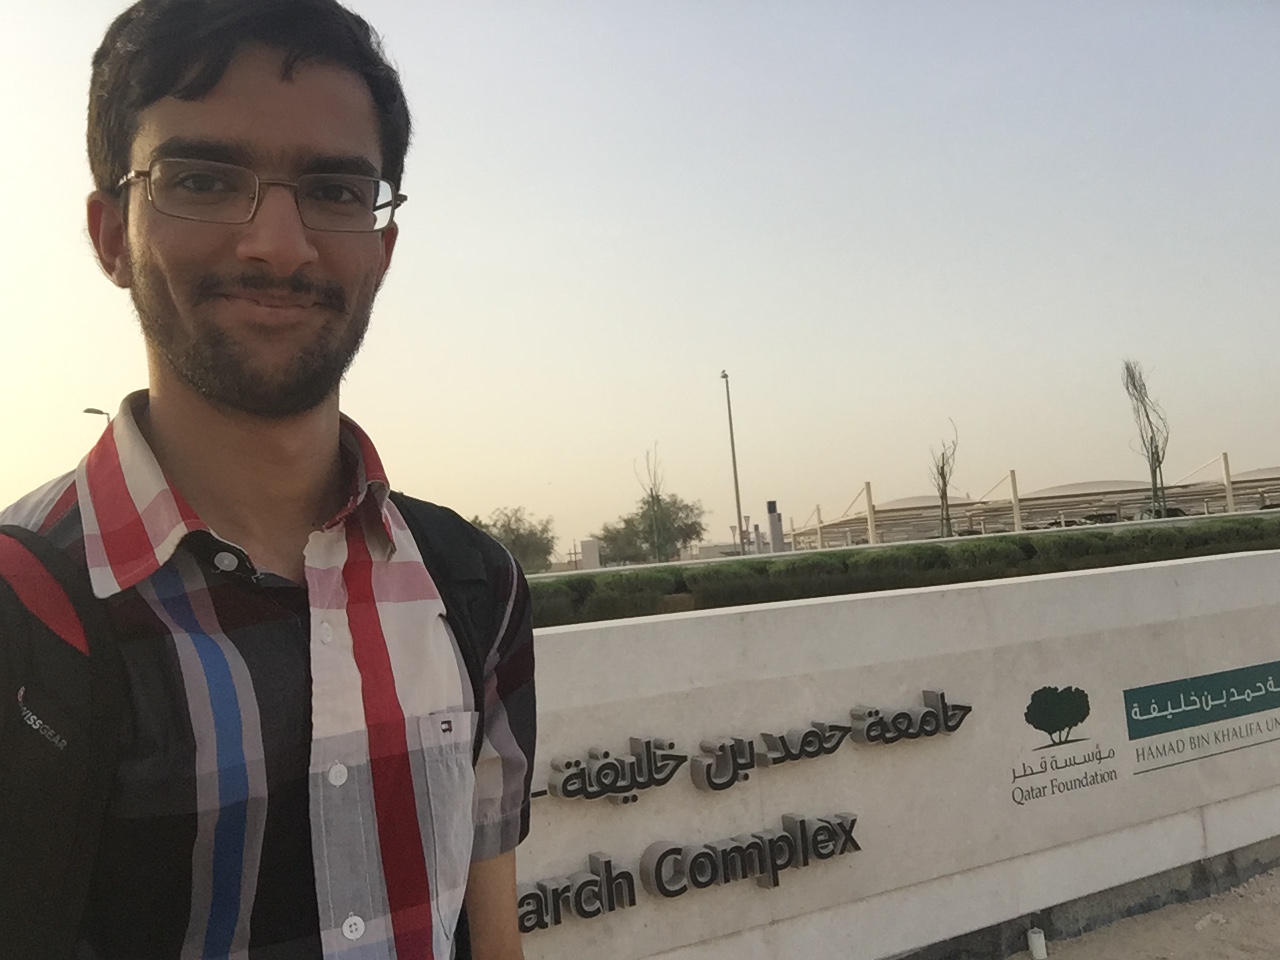 Masoomali Fatehkia in Doha at the Qatar Computer Research Institute